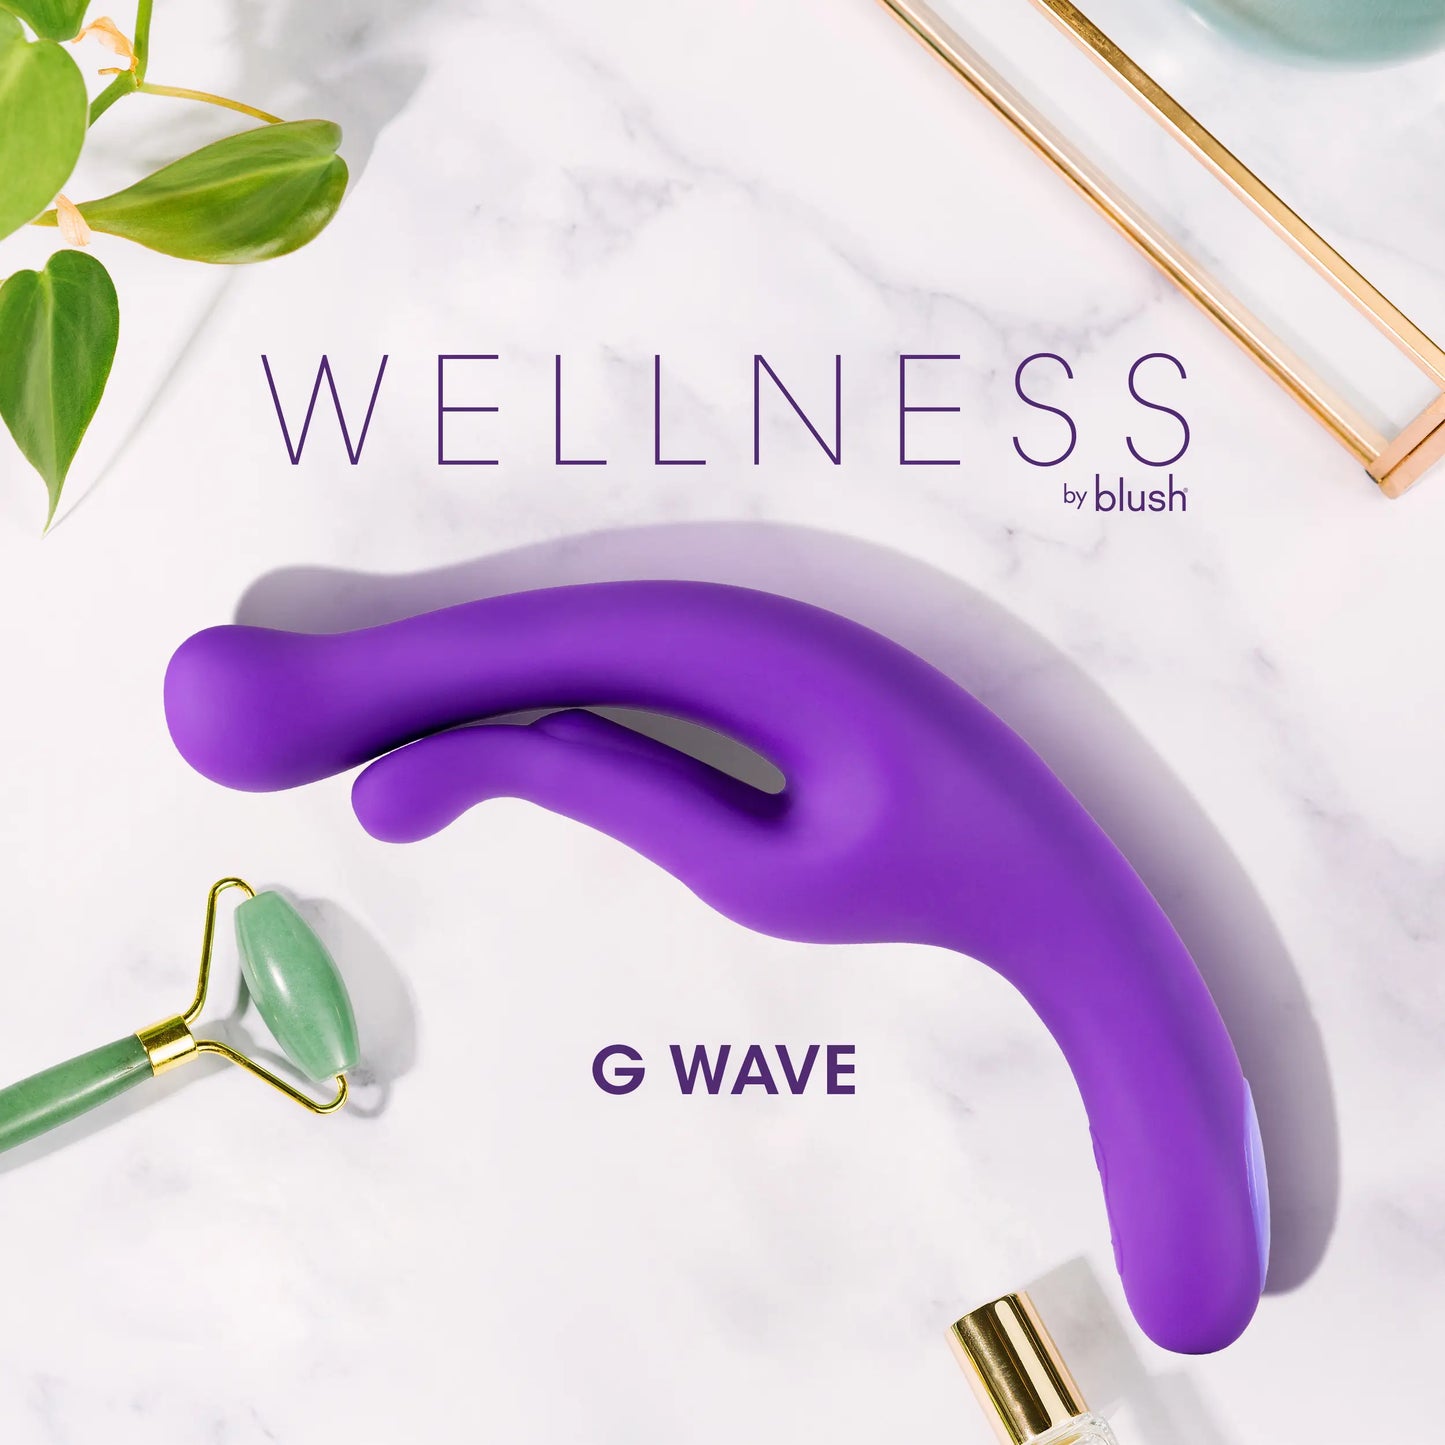 Wellness G Wave - 11.5" Dual Motor Pressure Massager